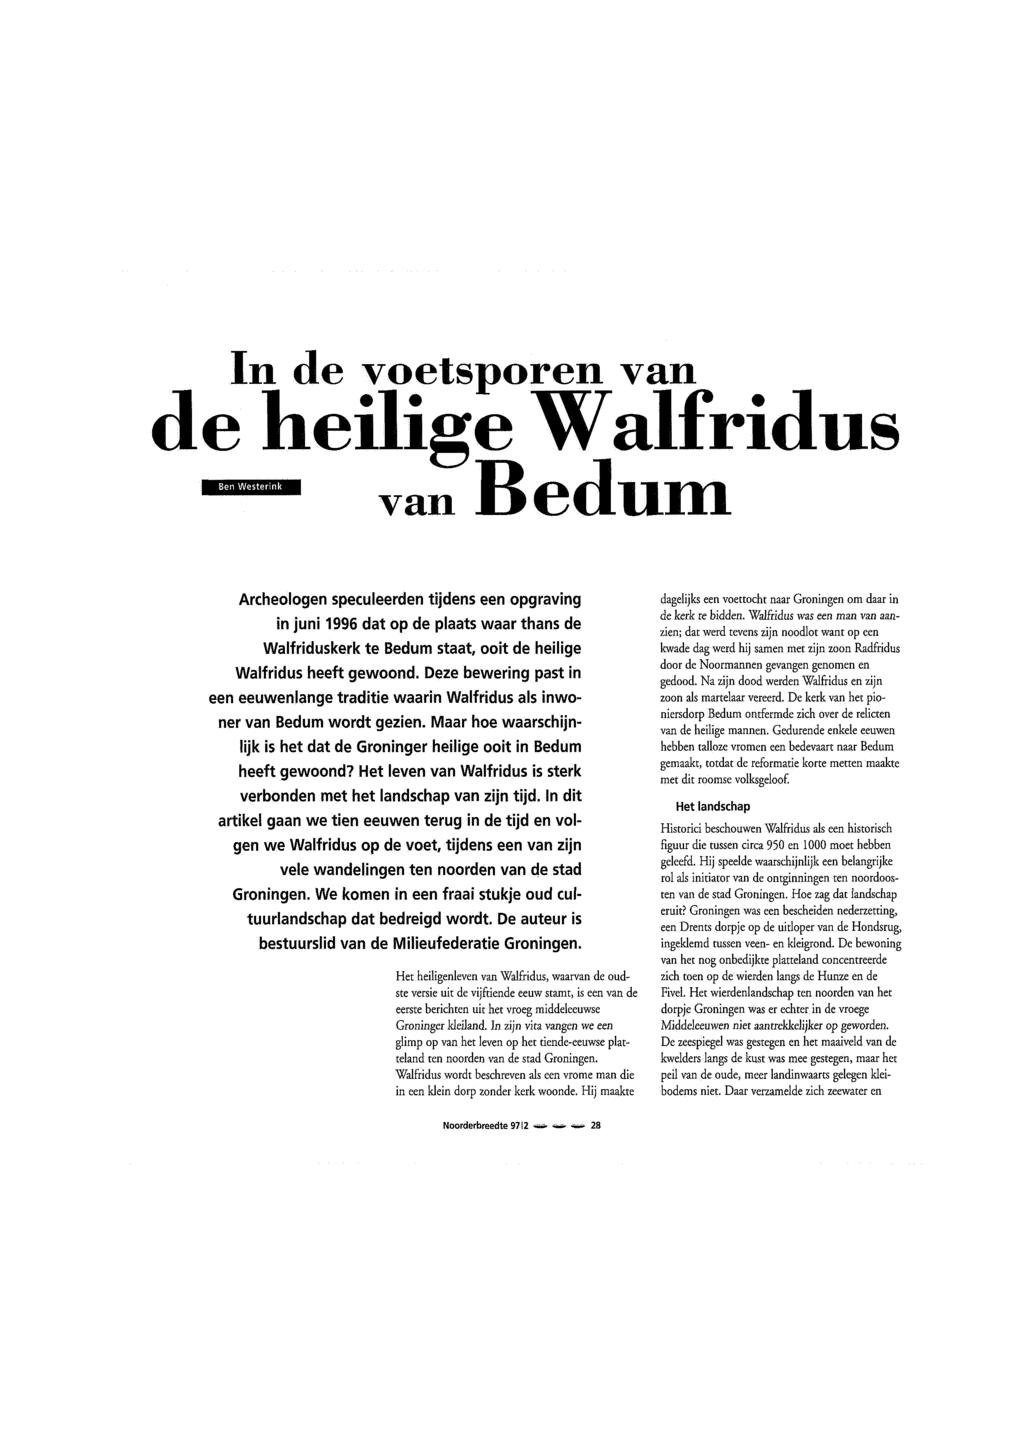 In de voetsporen van de heilige Walfridus van Bedum Archeologen speculeerden tijdens een opgraving in juni 1996 dat op de plaats waar thans de Walfriduskerk te Bedum staat, ooit de heilige Walfridus